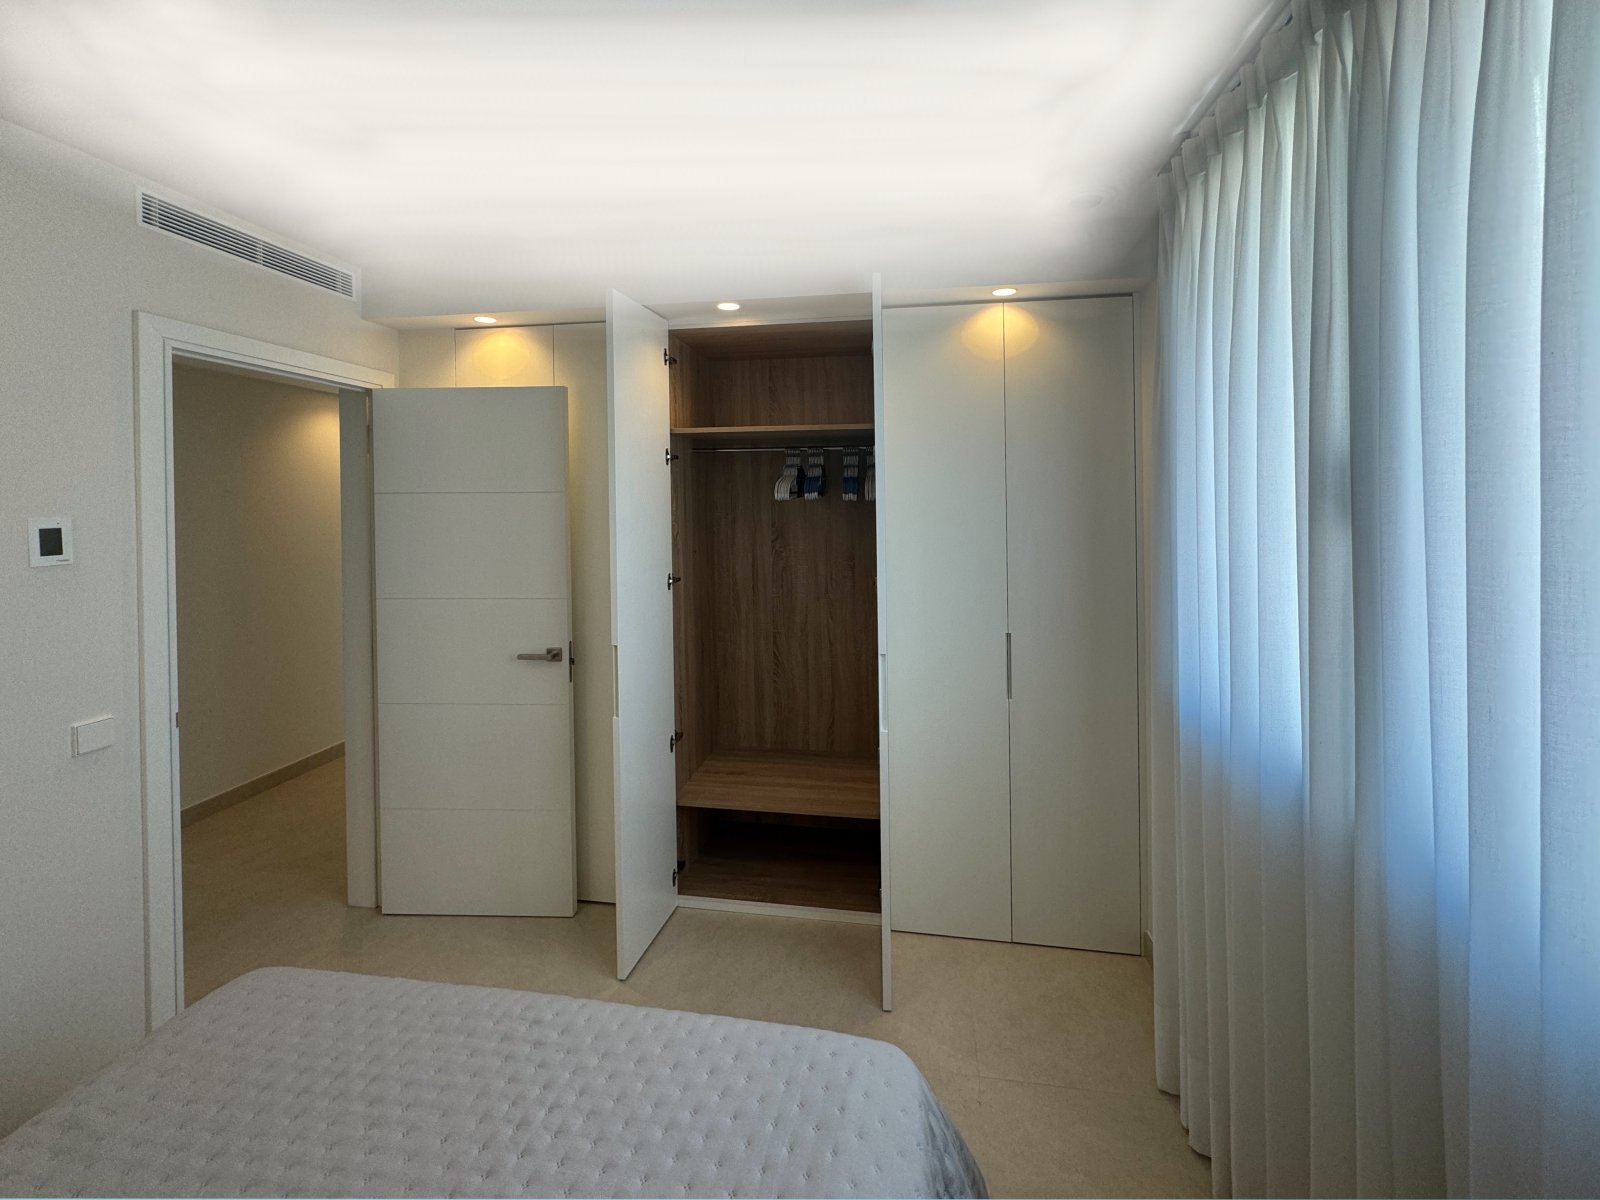 Schlafzimmer in der Luxus Wohnung in Palma